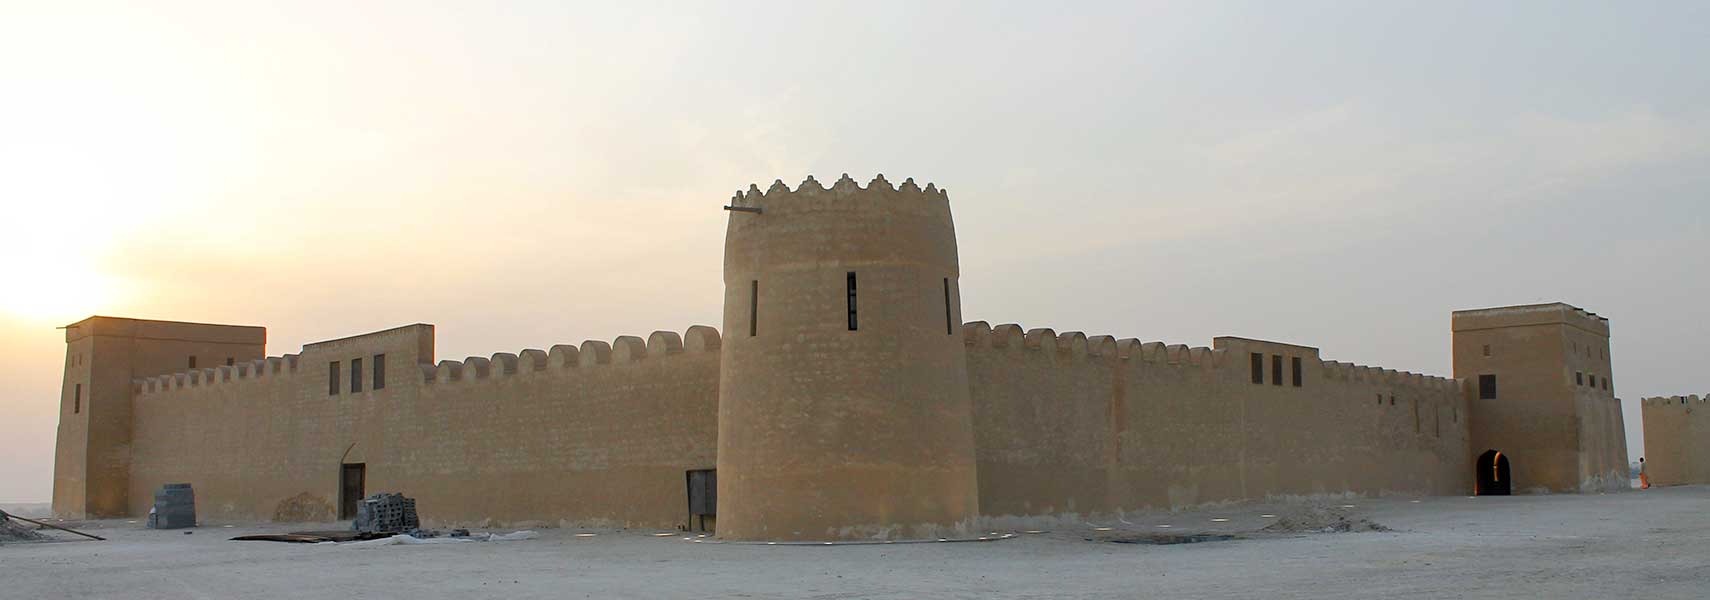 Riffa Fort (Shaikh Salman bin Ahmed Fort), Bahrain